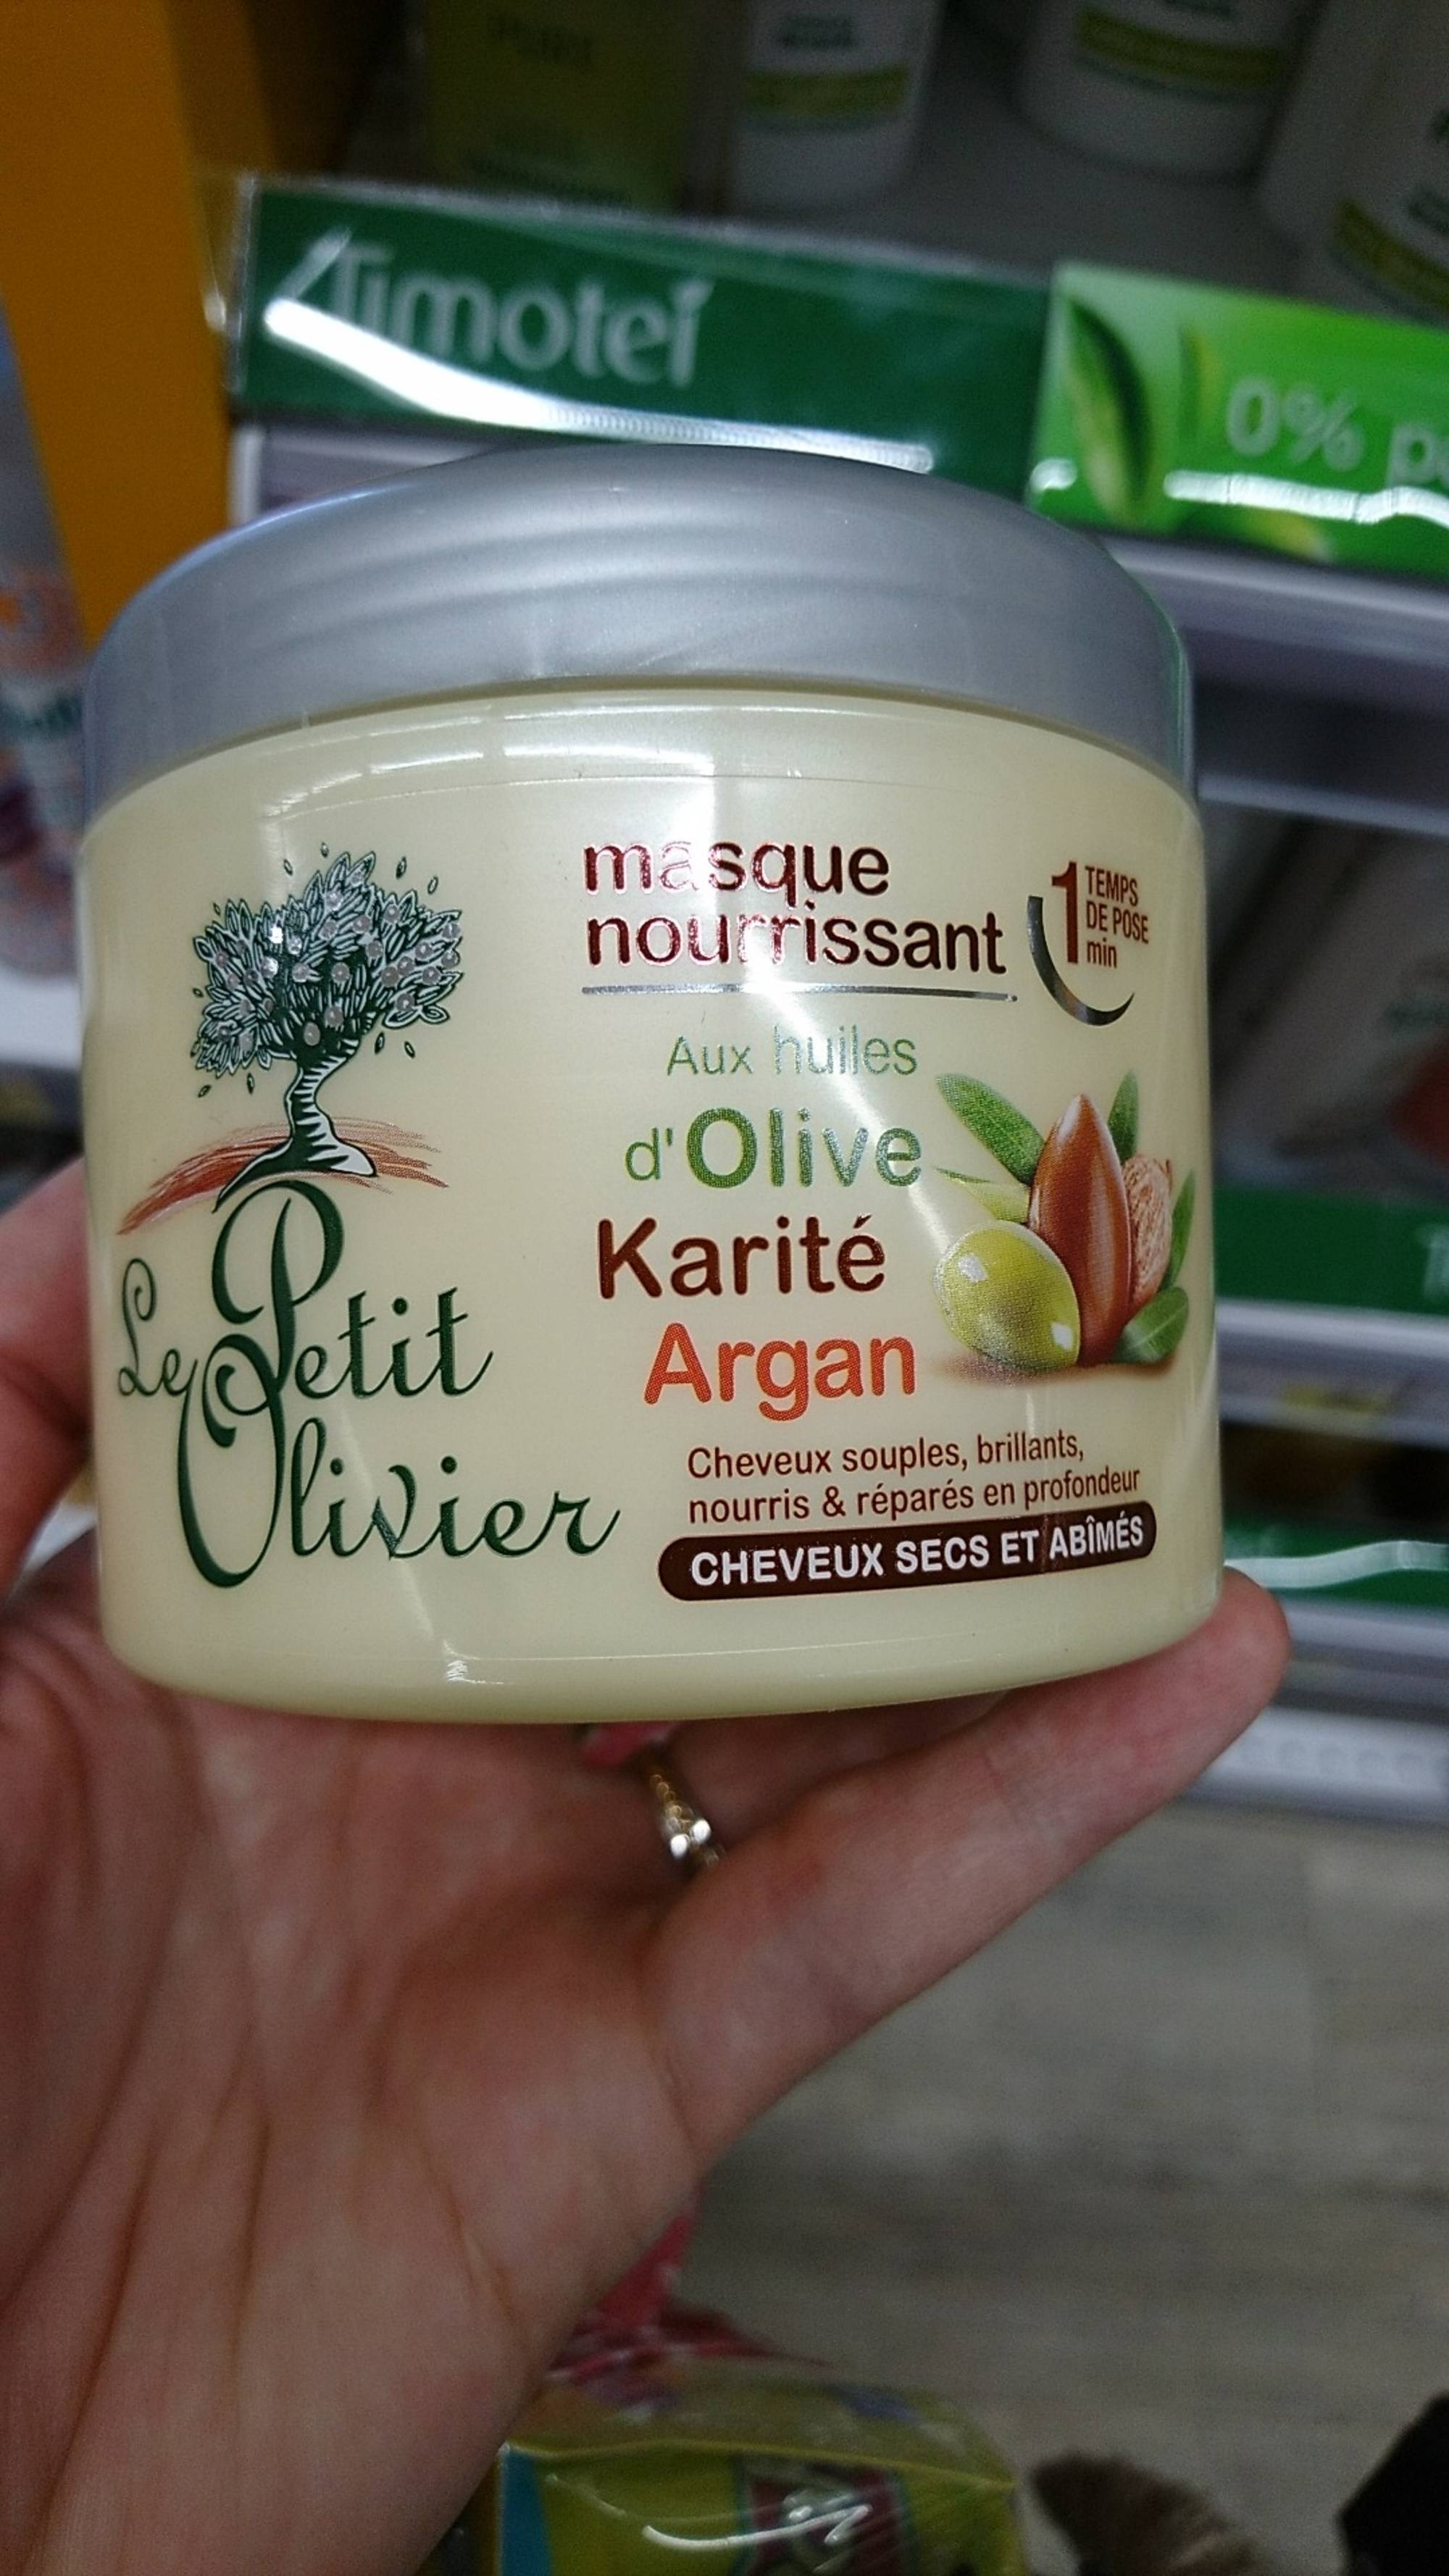 LE PETIT OLIVIER - Masque nourrissant aux huiles d'olive karité et argan